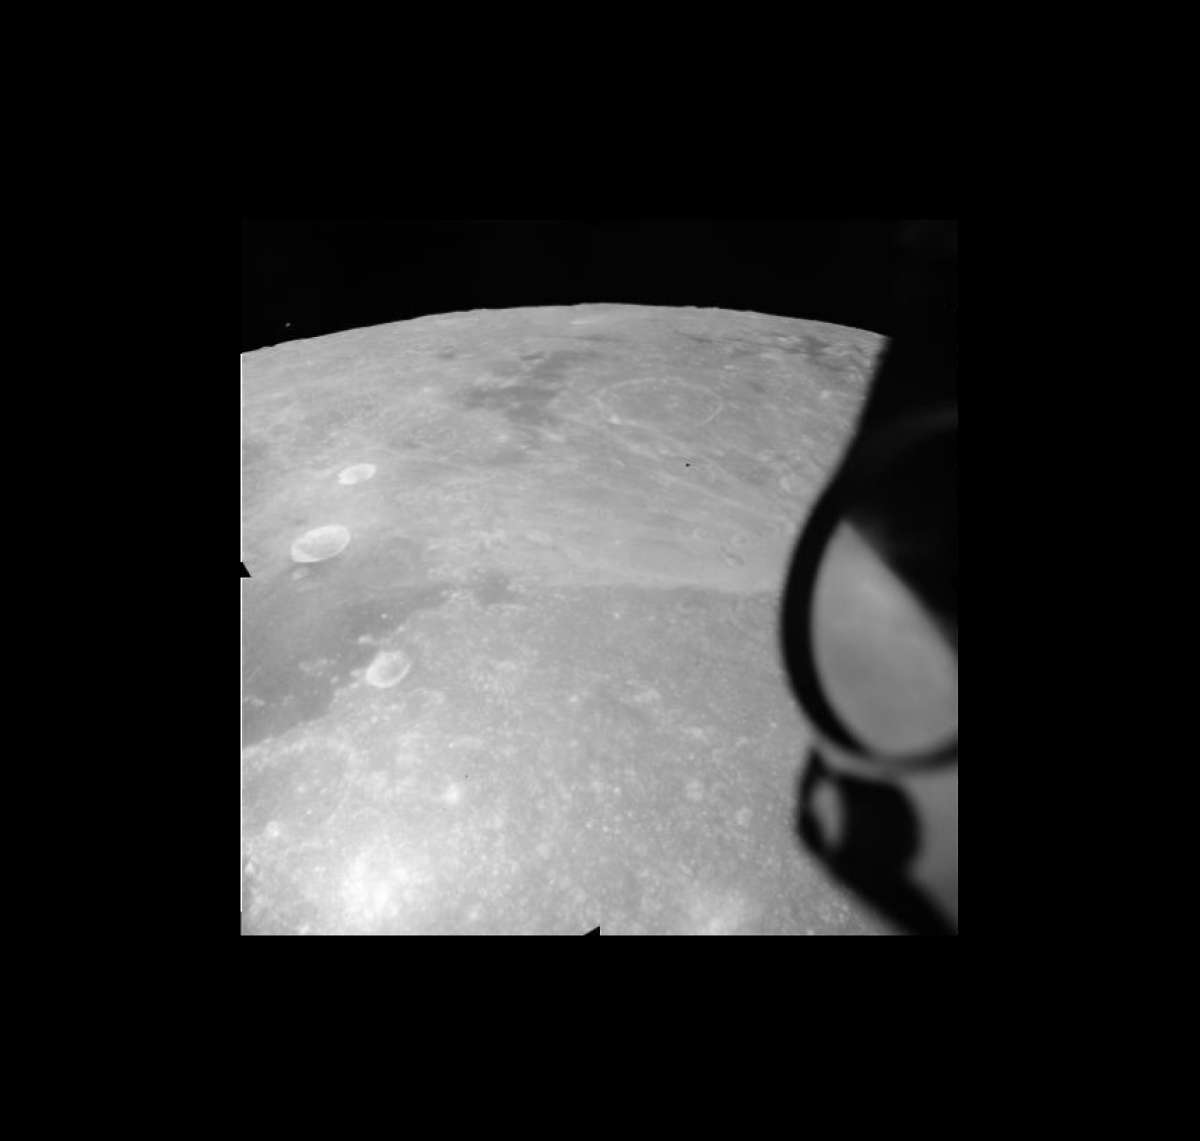 Учёные увидели таинственный НЛО на снимках миссии Аполлон»